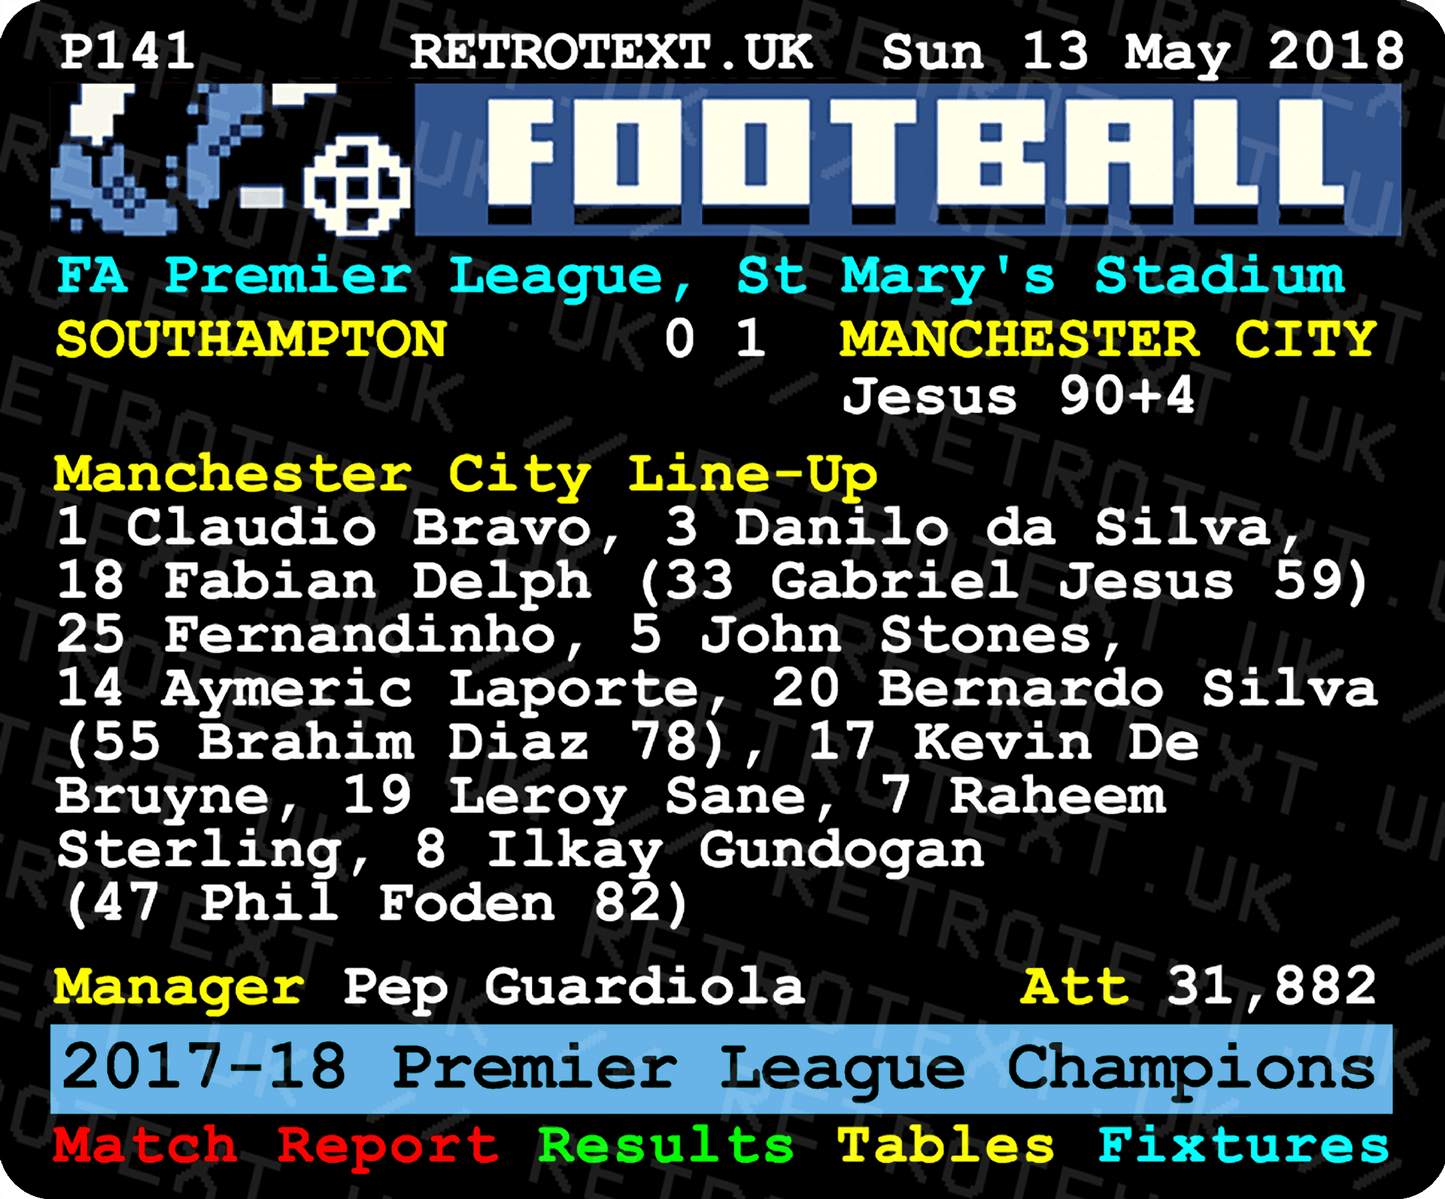 Manchester City 2018 Premier League Champions Pep Guardiola Teletext Mug